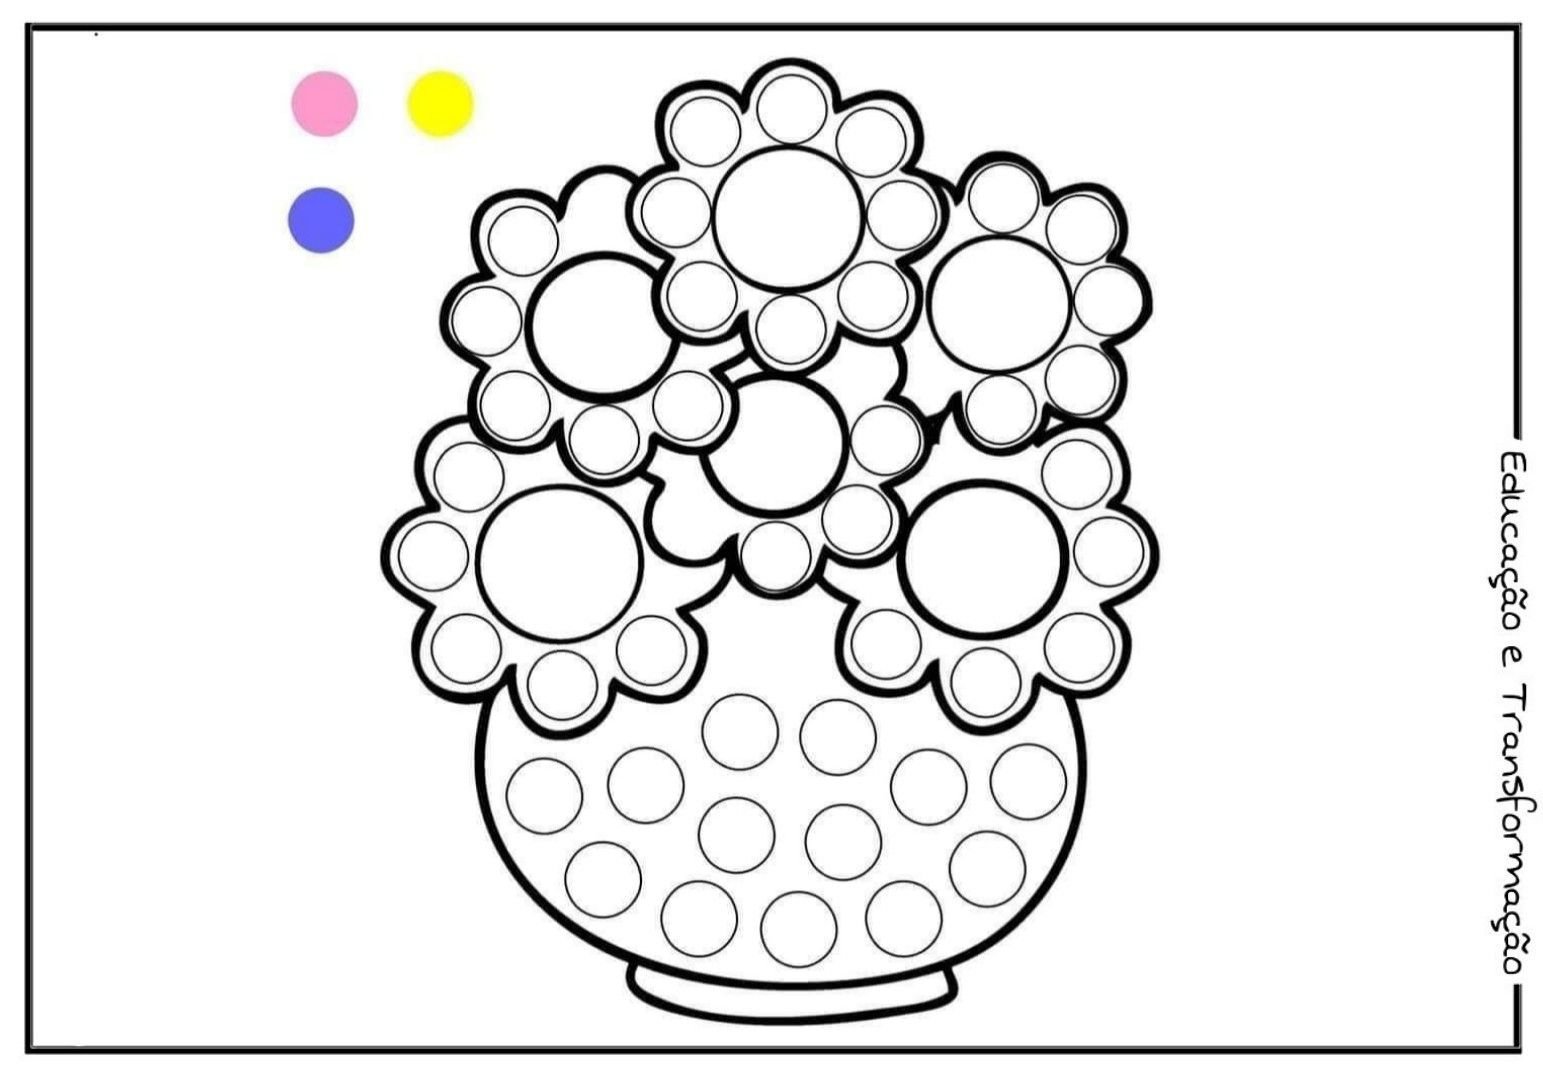 Пластилинография средняя группа шаблоны. Раскраски для пальчикового рисования. Раскраски для лепки пластилином. Шаблоны для рисования пластилином. Аппликация пластилином шаблоны.